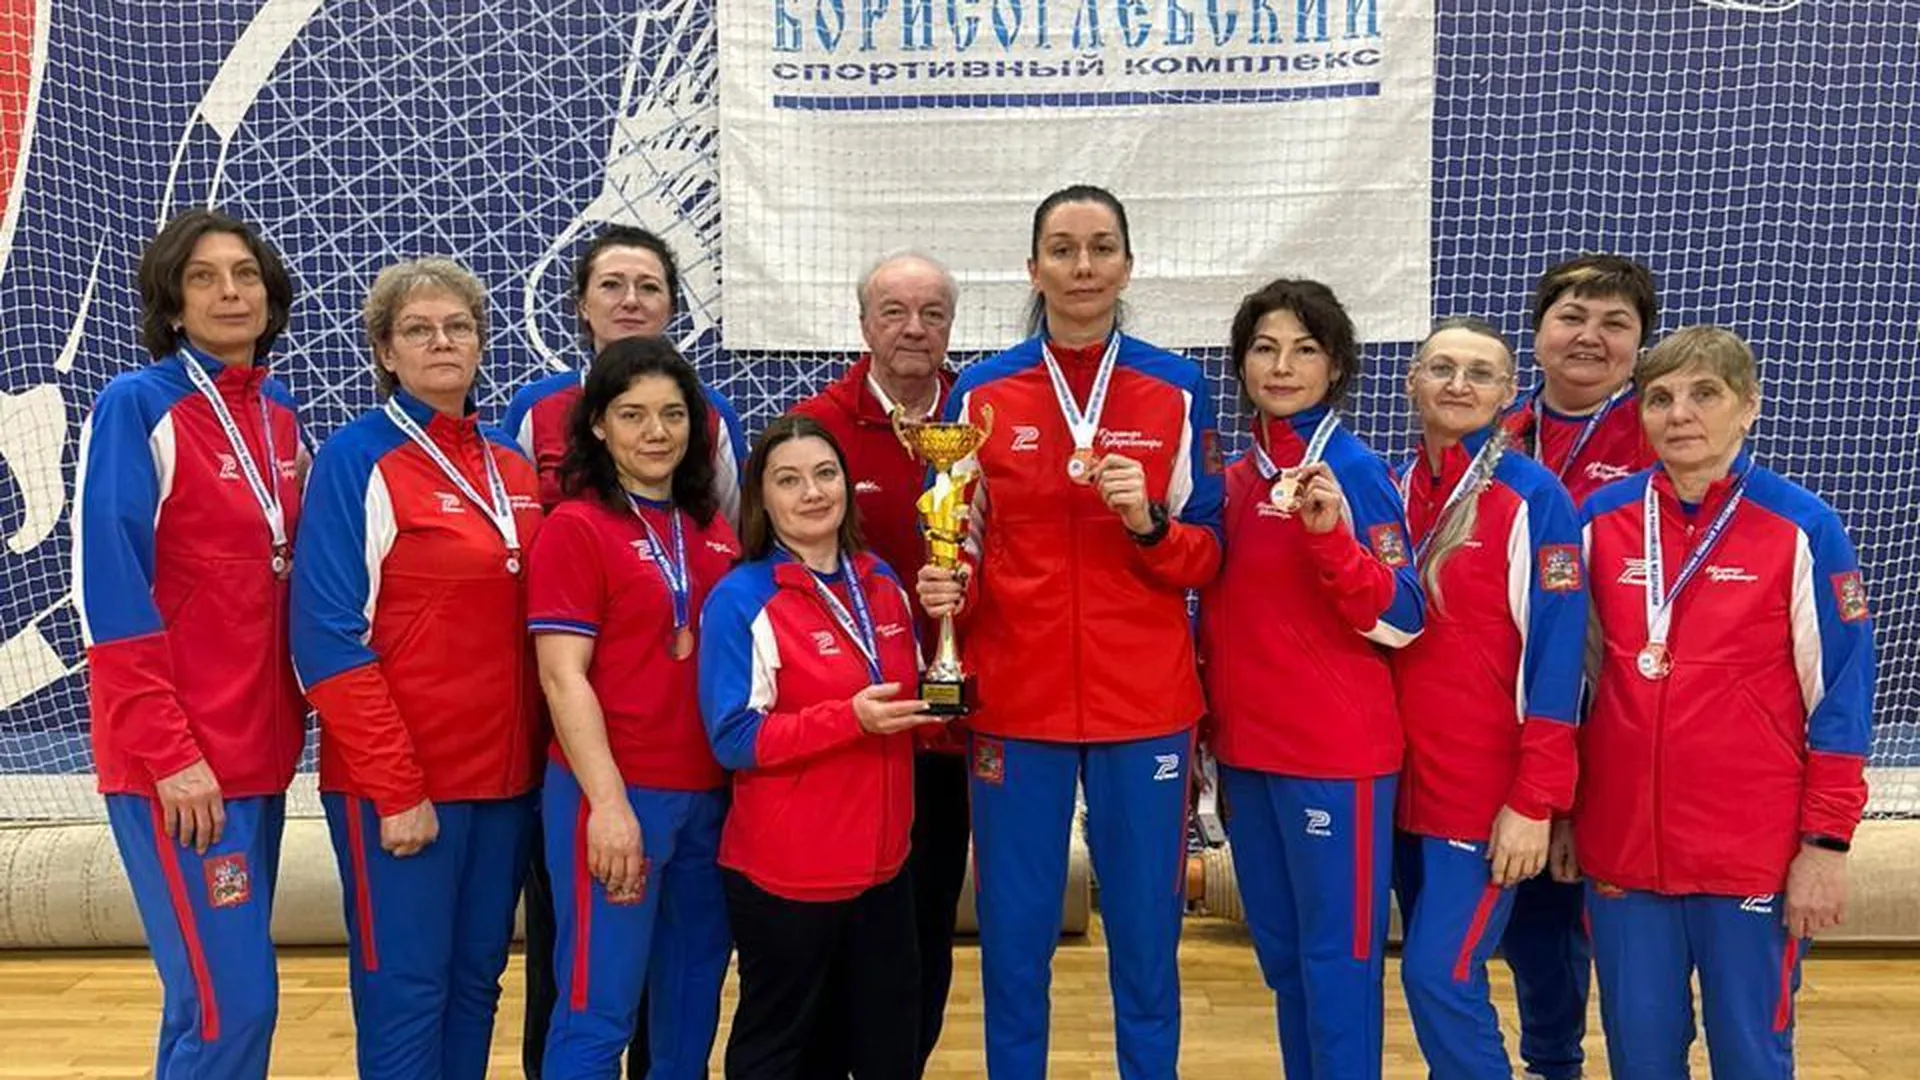 Подмосковье выиграло бронзу Кубка России по волейболу сидя